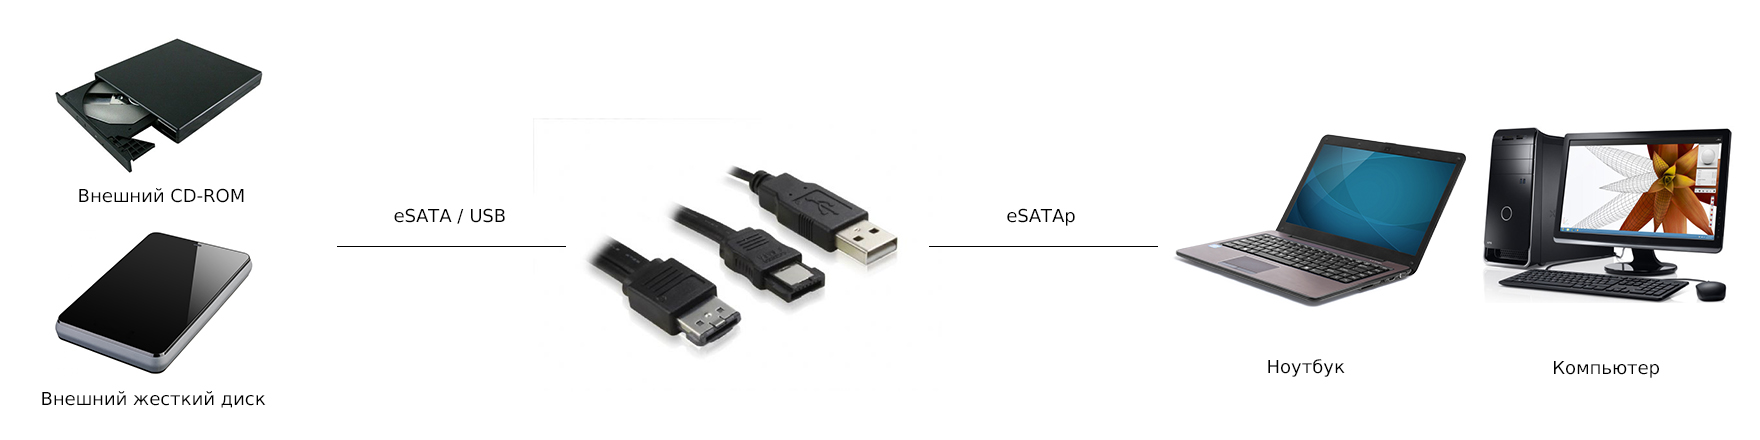 Переходник eSATA / USB на eSATAp Greenconnect GC-ST501